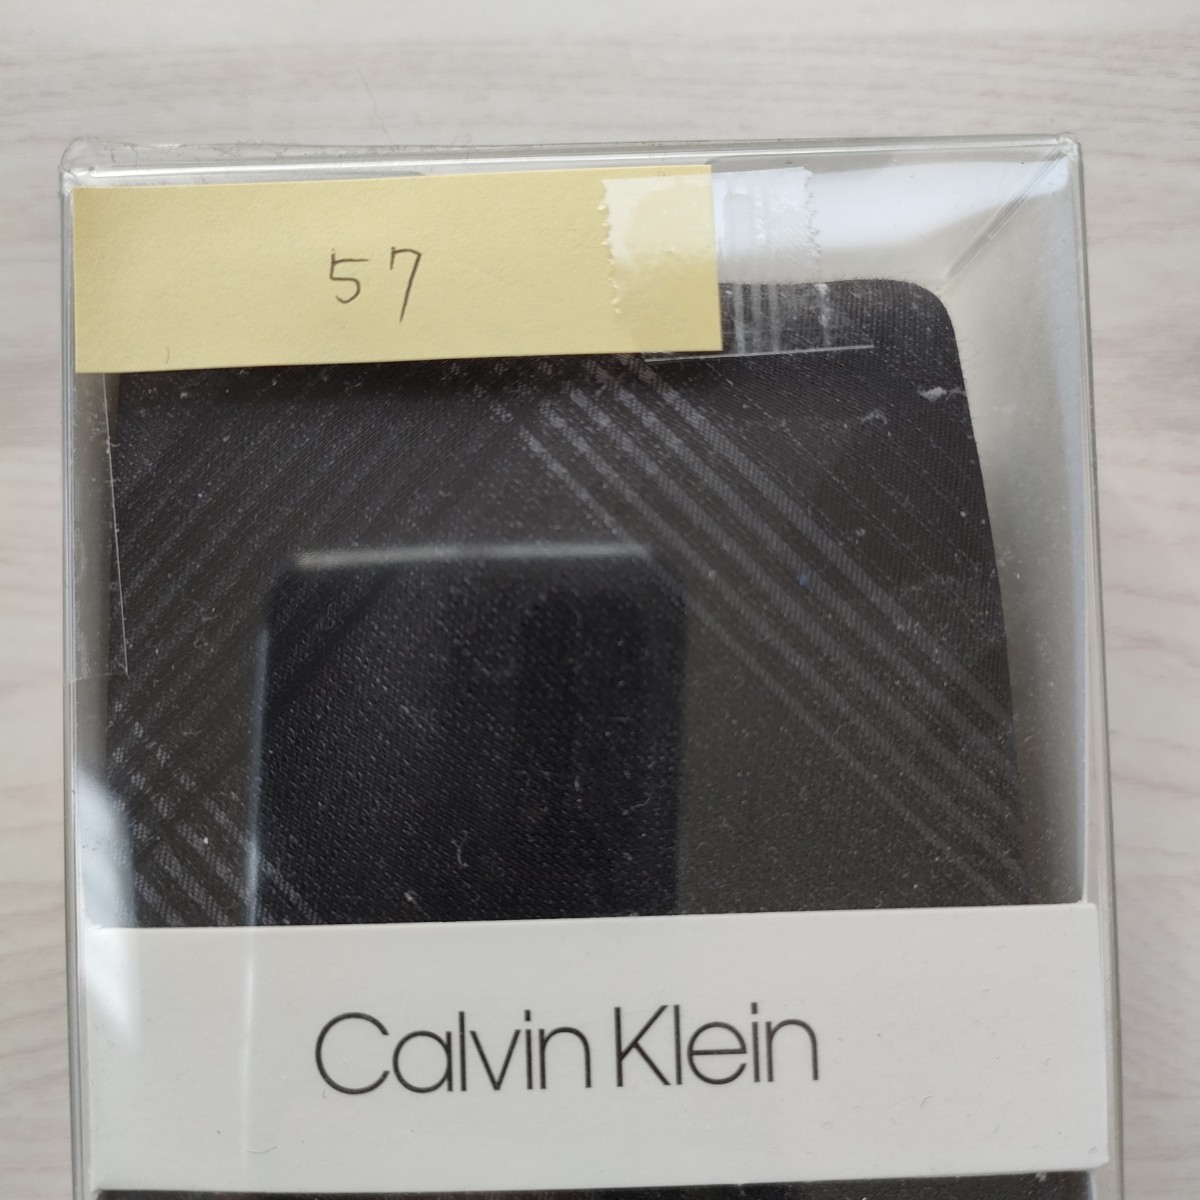  Calvin Klein (Calvin Klein)57 necktie new goods unused box attaching unopened goods accessory box, clear case 